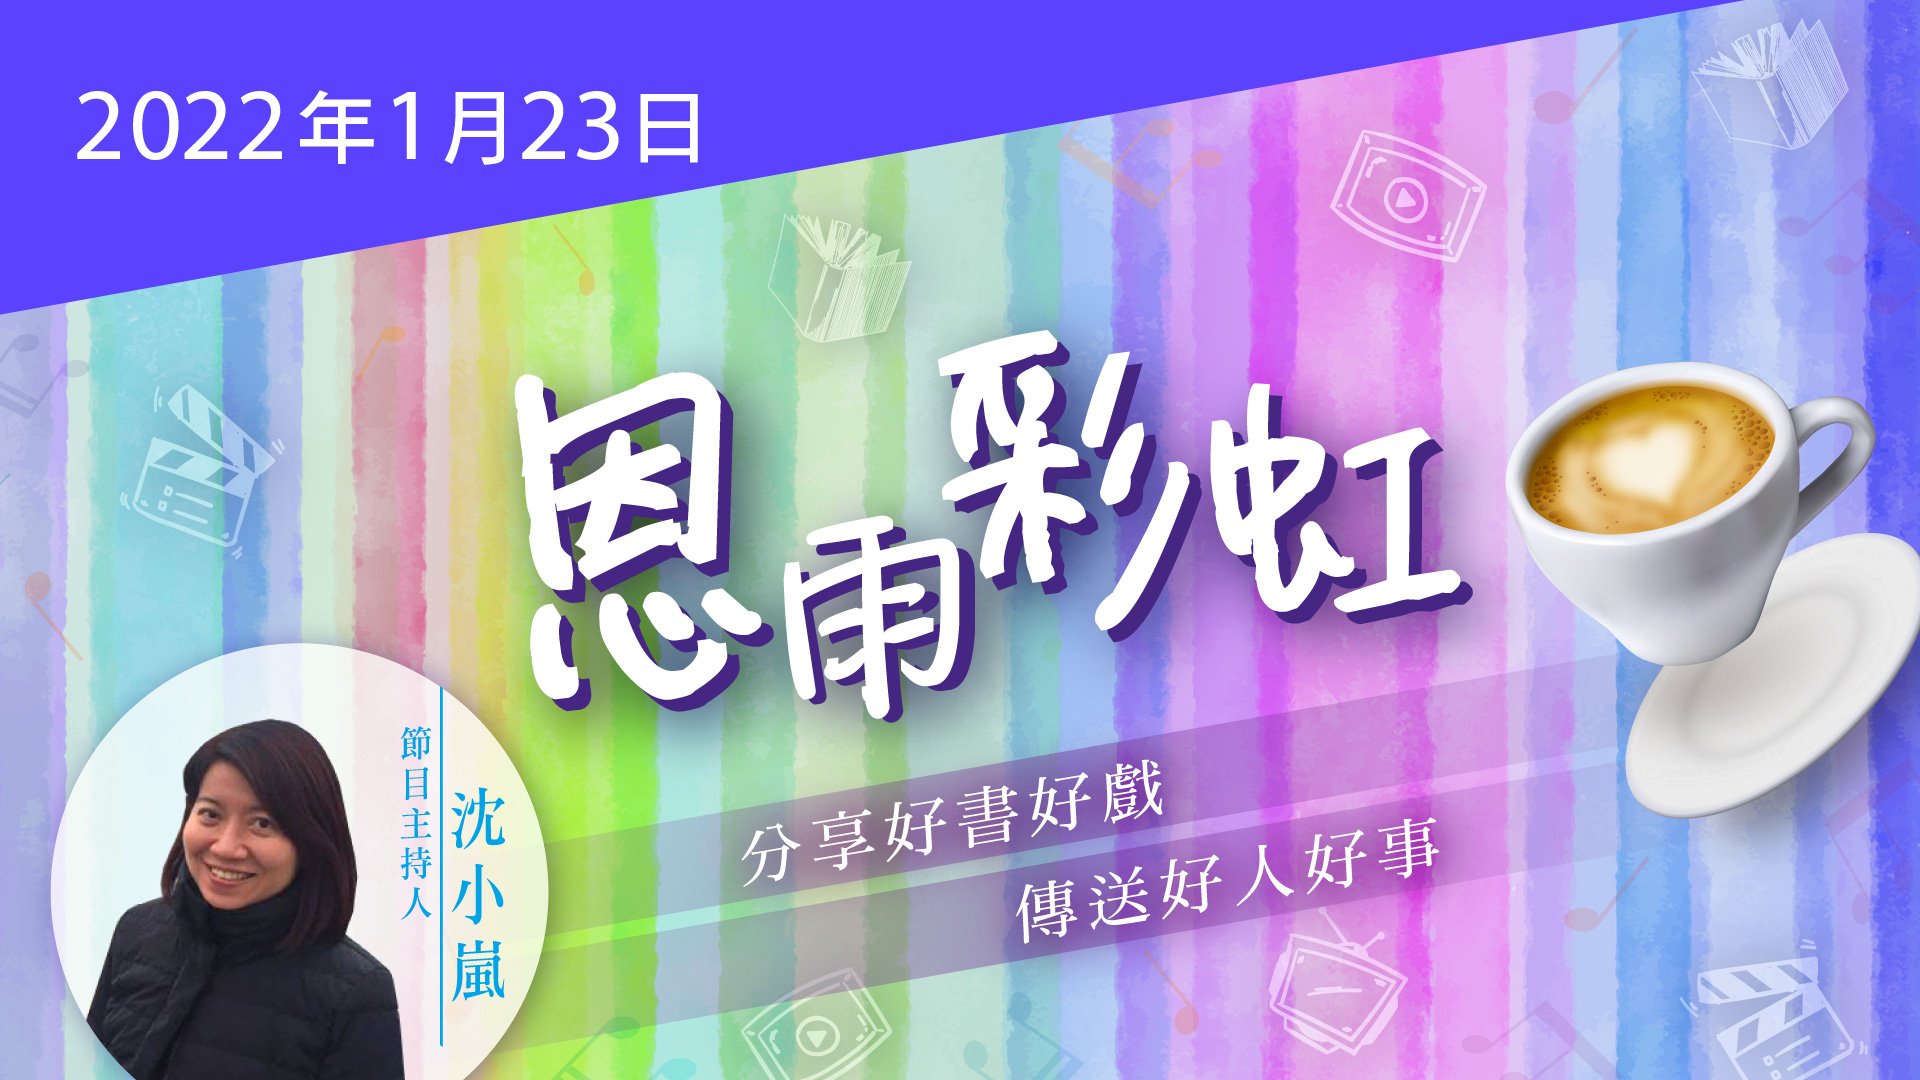 電台 恩雨彩虹 國語 (2022JAN23)